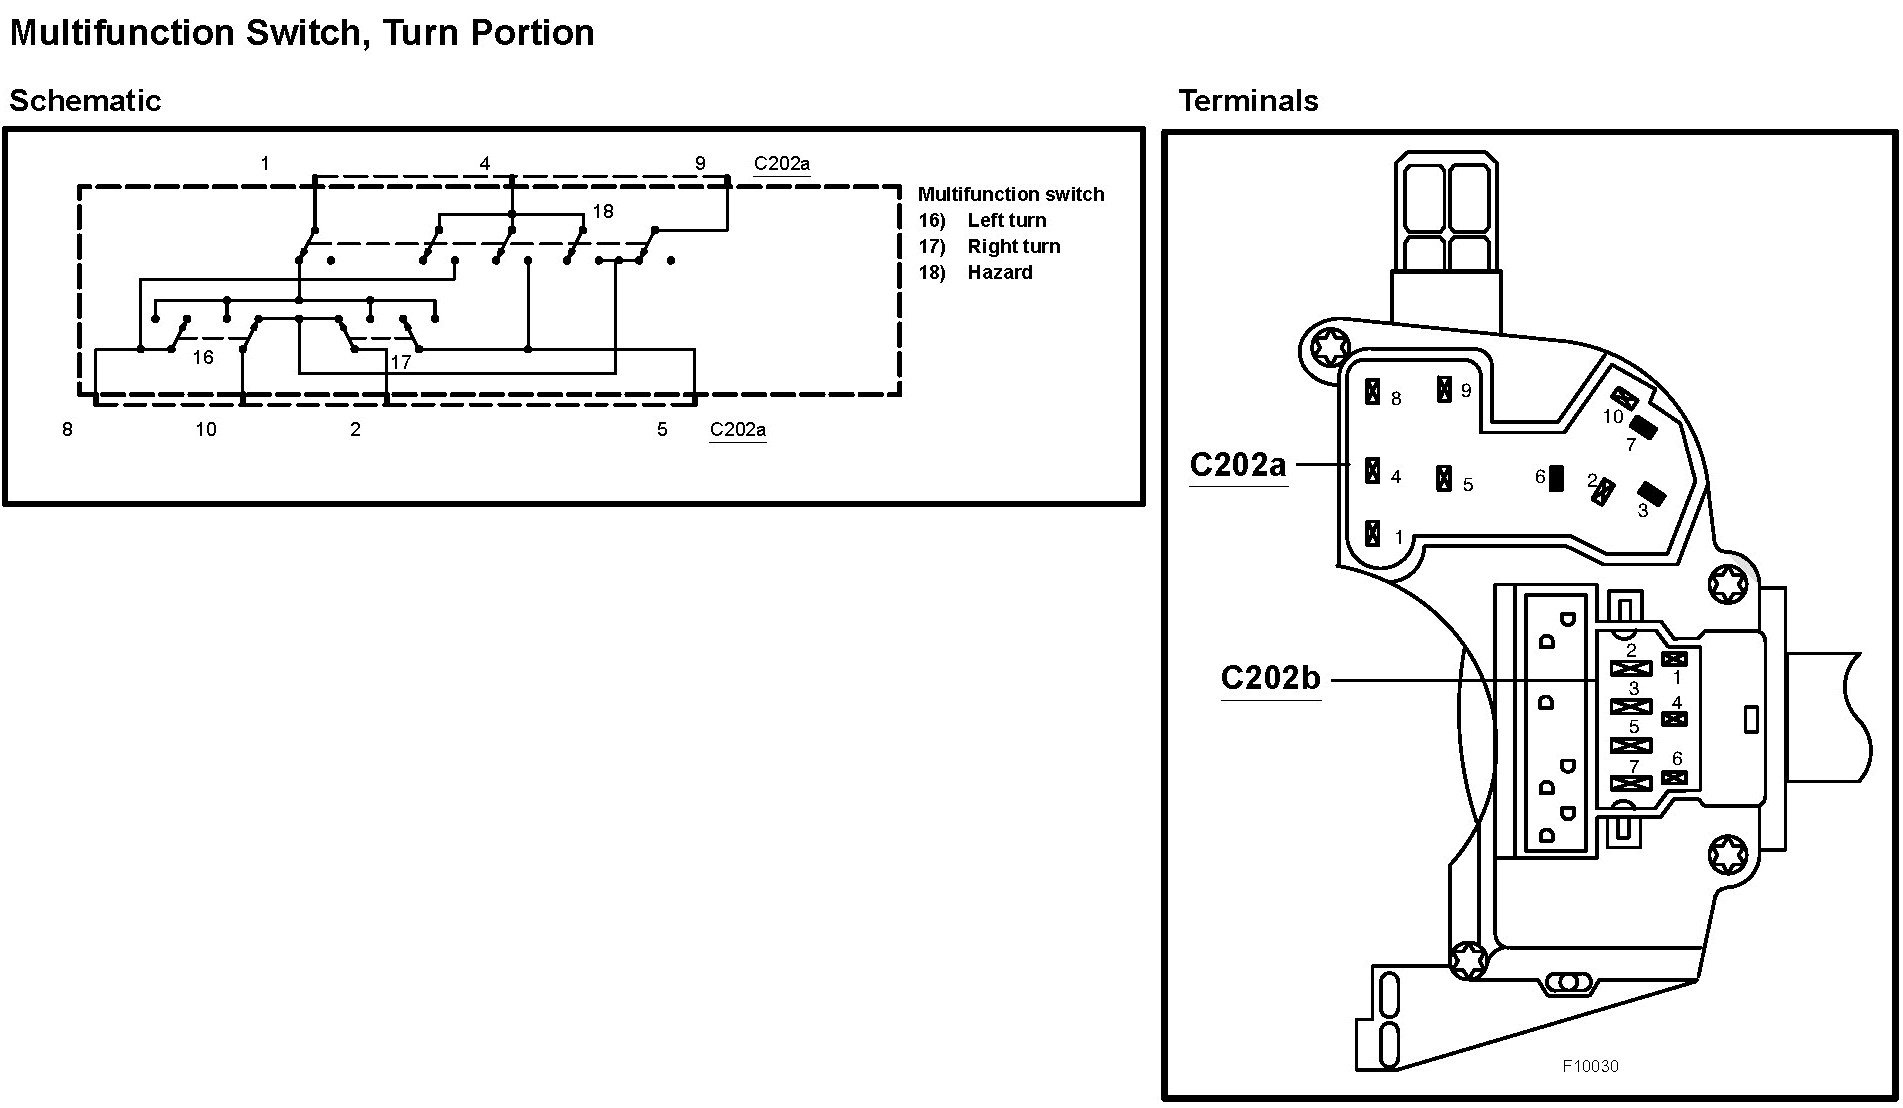 Multifunction Switch Wiring Diagram - Wiring Diagram